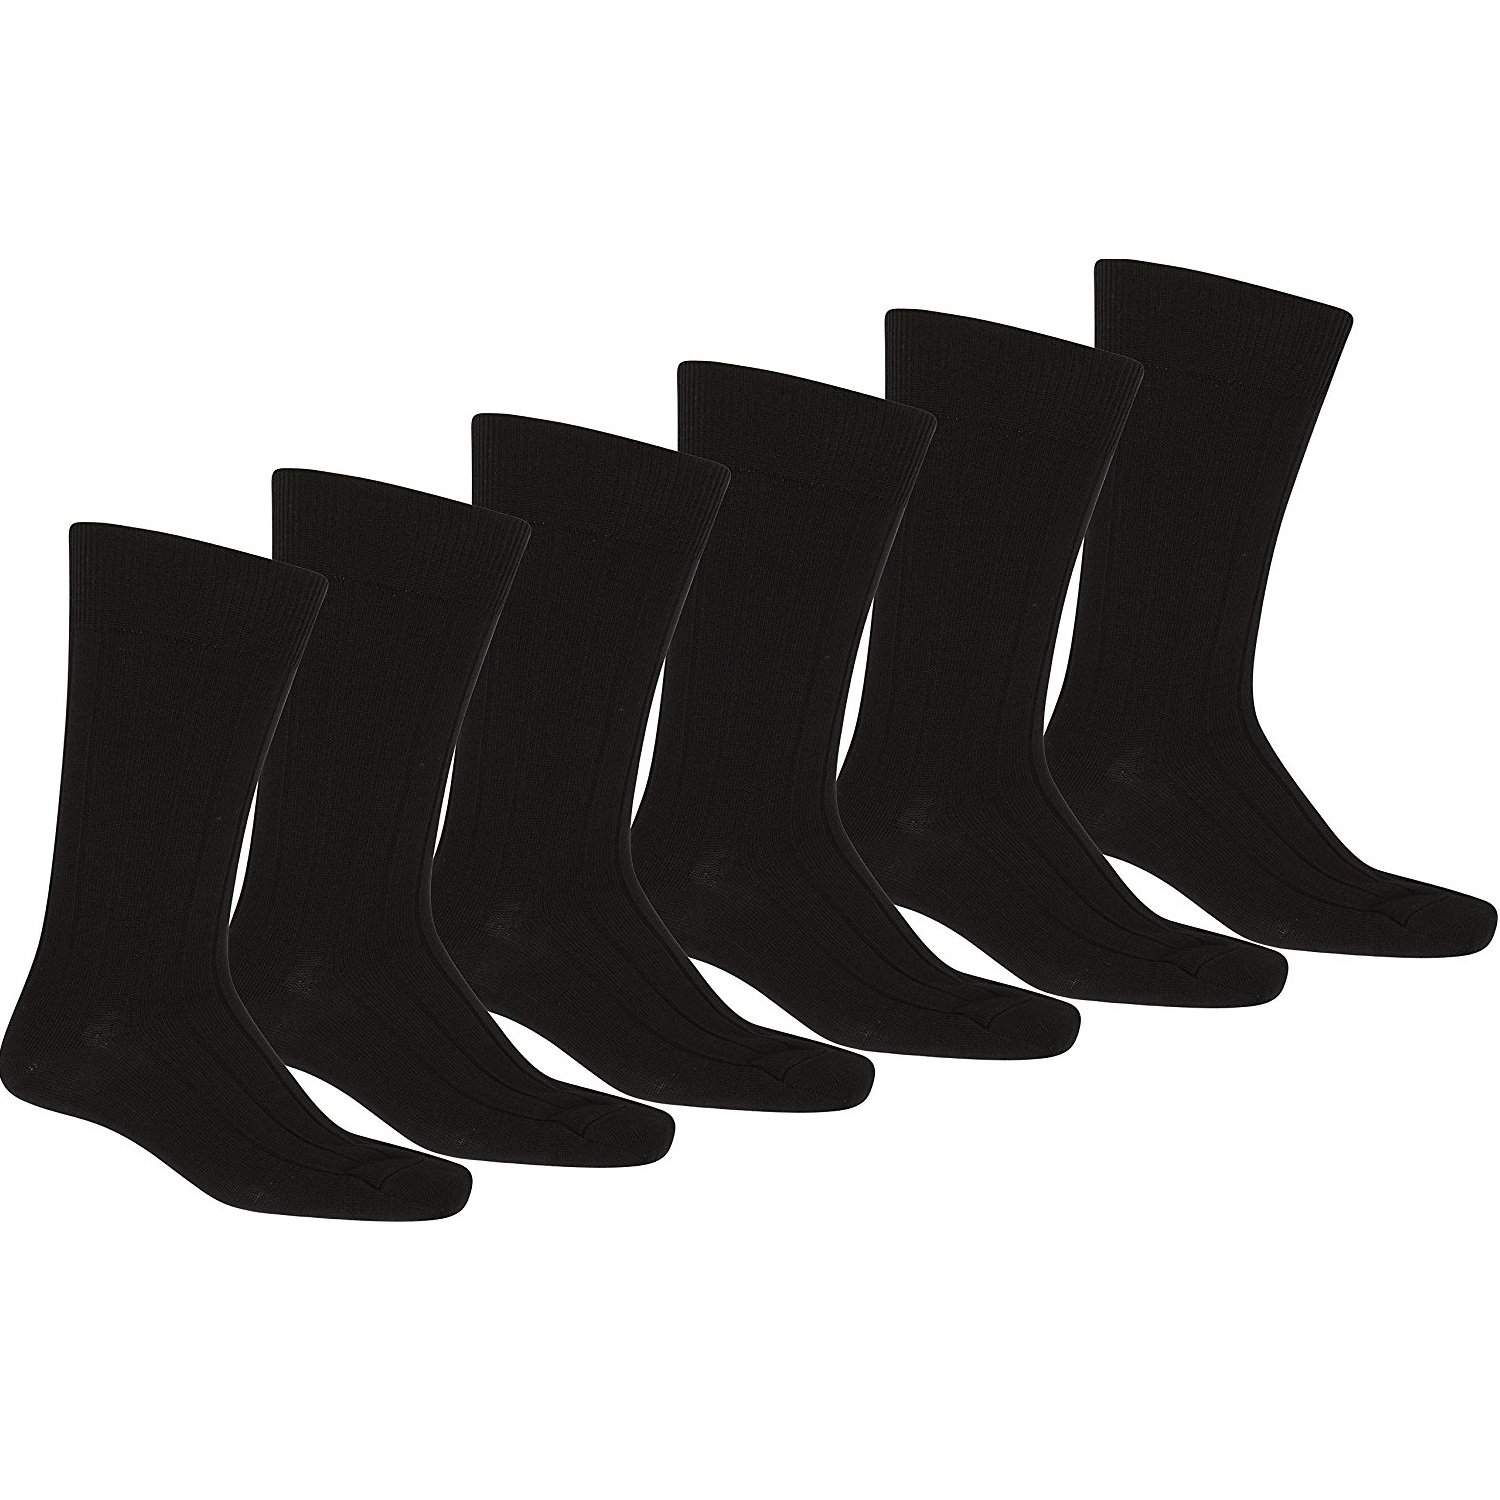 Mechaly Men 24 Pack Solid Plain Dress Socks in Black - Bulk Wholesale